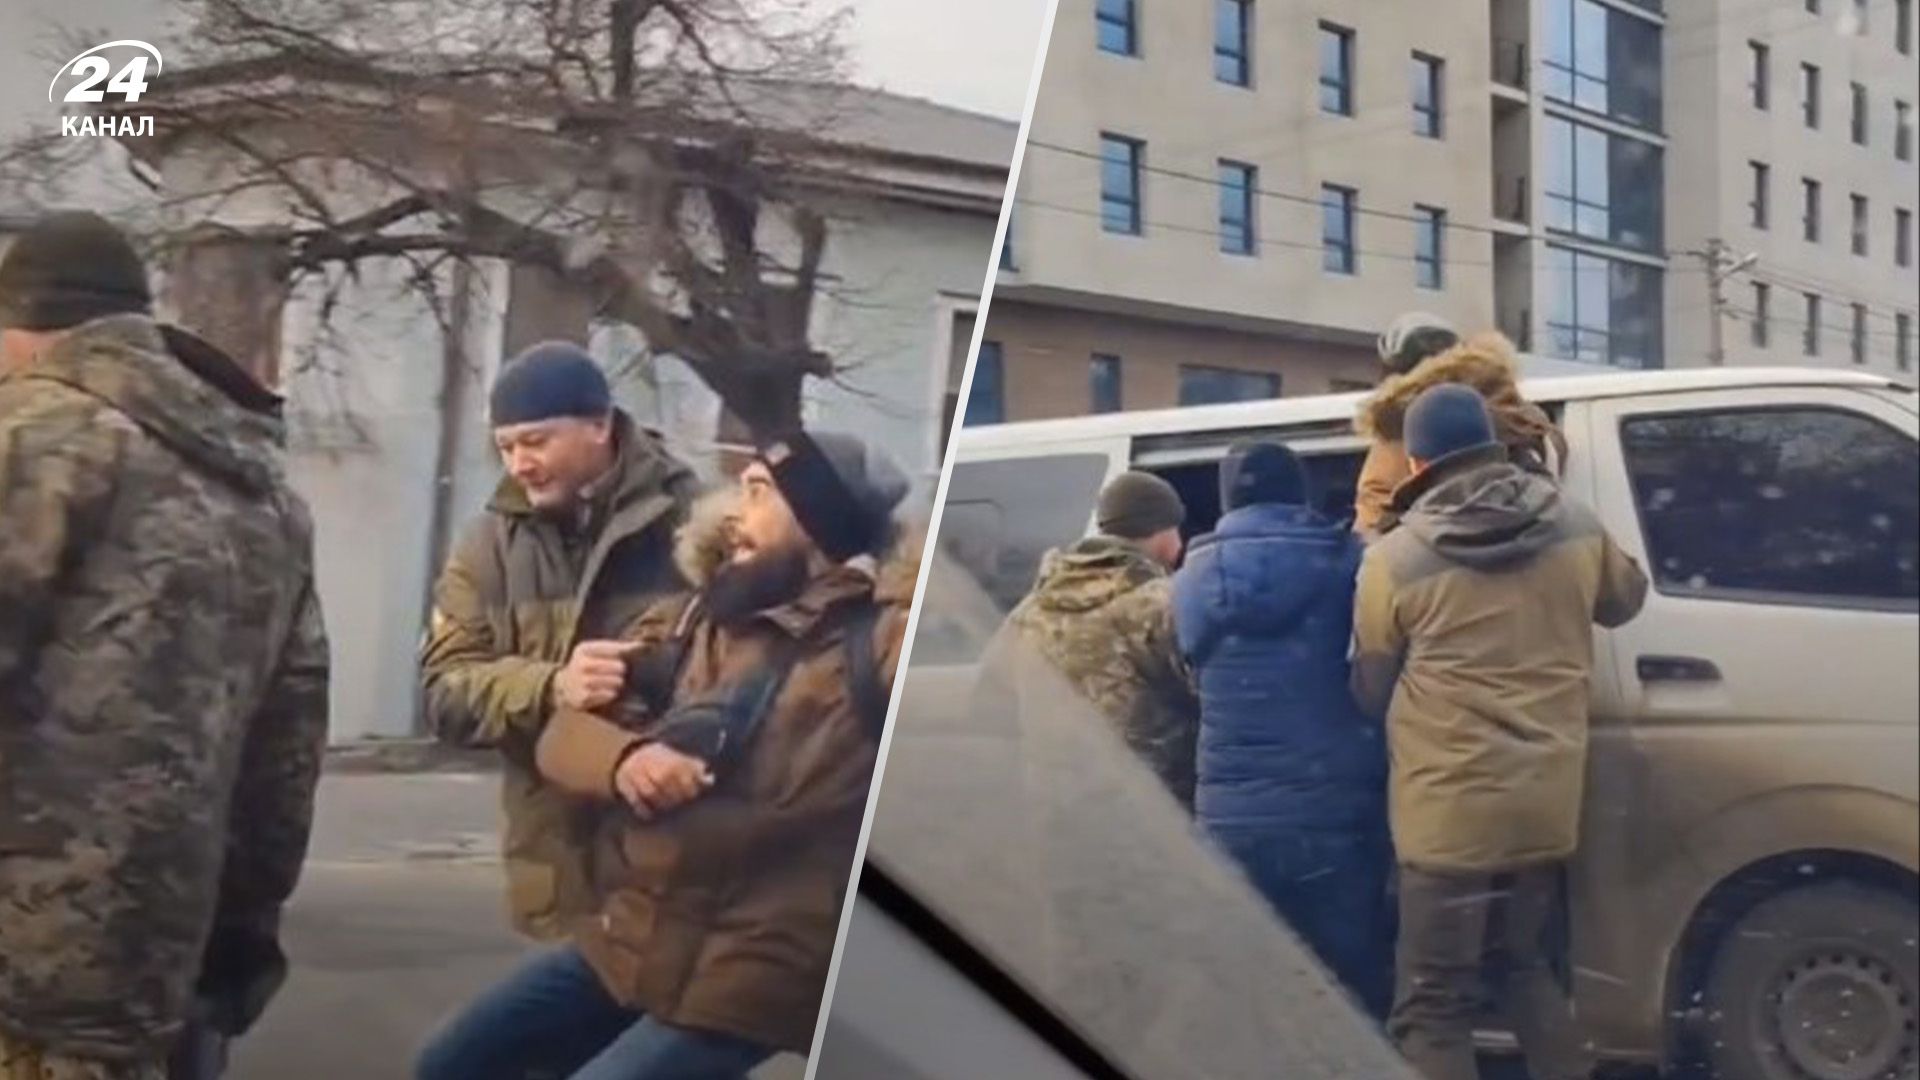 В Харькове люди в военной форме затолкали мужчину в микроавтобус